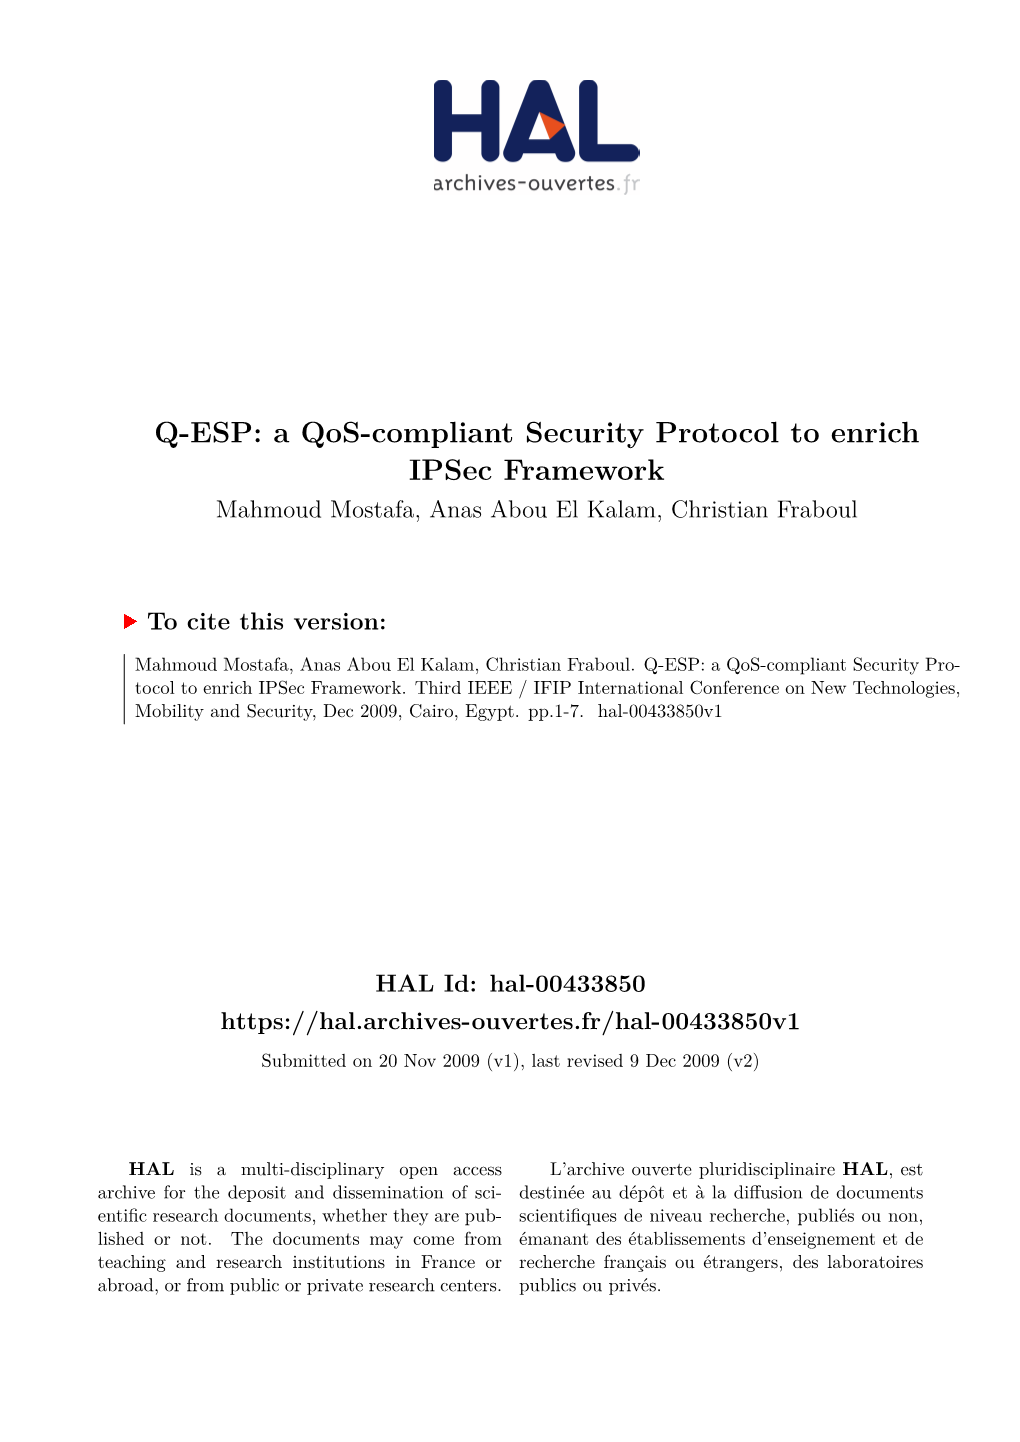 Q-ESP: a Qos-Compliant Security Protocol to Enrich Ipsec Framework Mahmoud Mostafa, Anas Abou El Kalam, Christian Fraboul